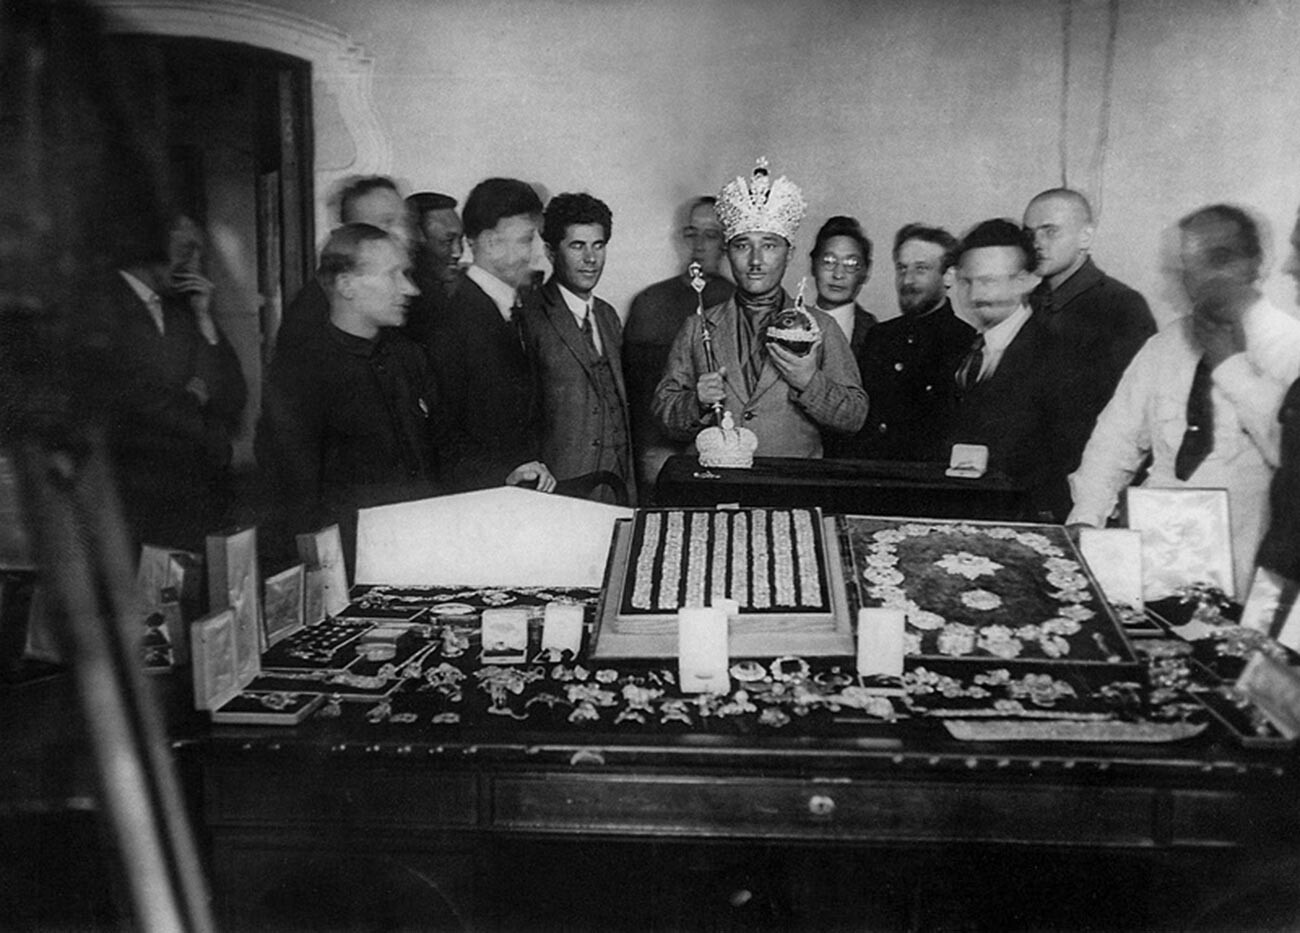 Invitado extranjero del Gojran se prueba la corona de los emperadores rusos, y en sus manos tiene los símbolos del poder zarista: el cetro y el orbe

